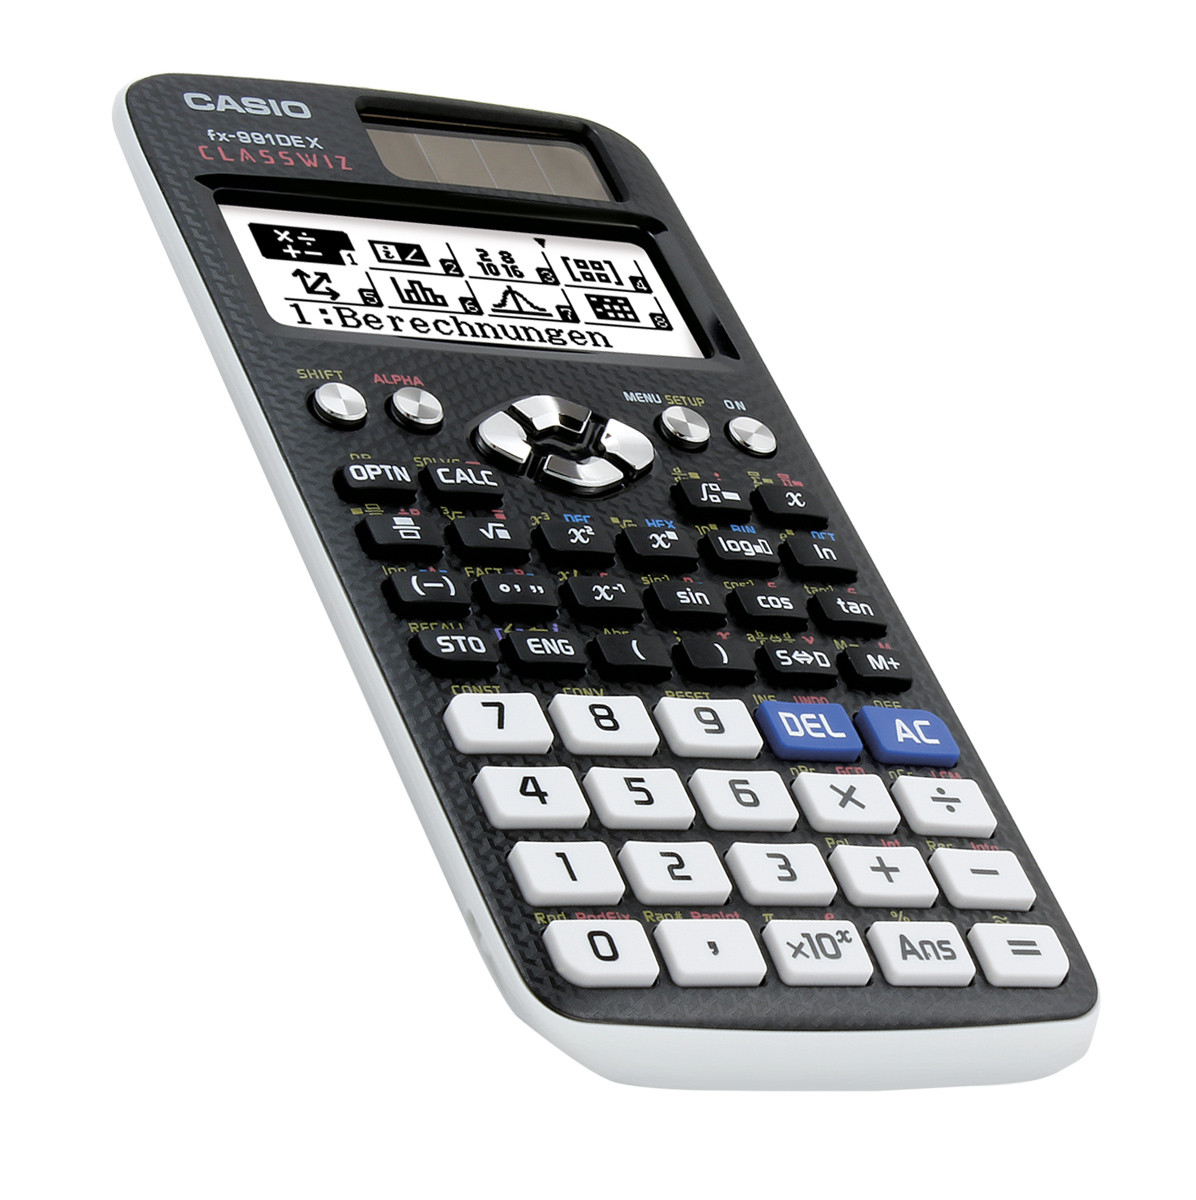 Casio scientific calculator emulator mac - browserreter